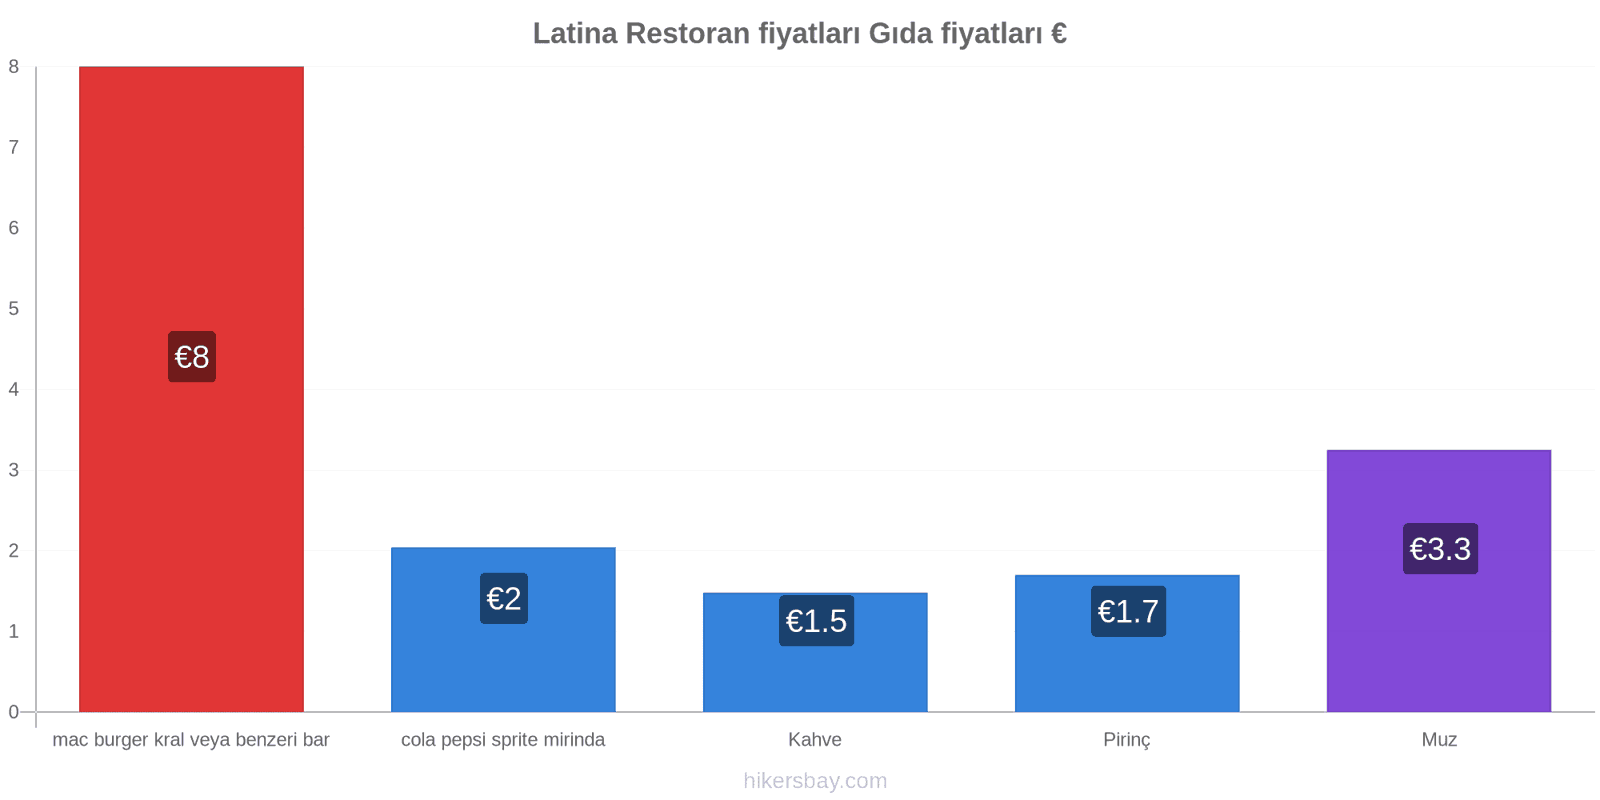 Latina fiyat değişiklikleri hikersbay.com